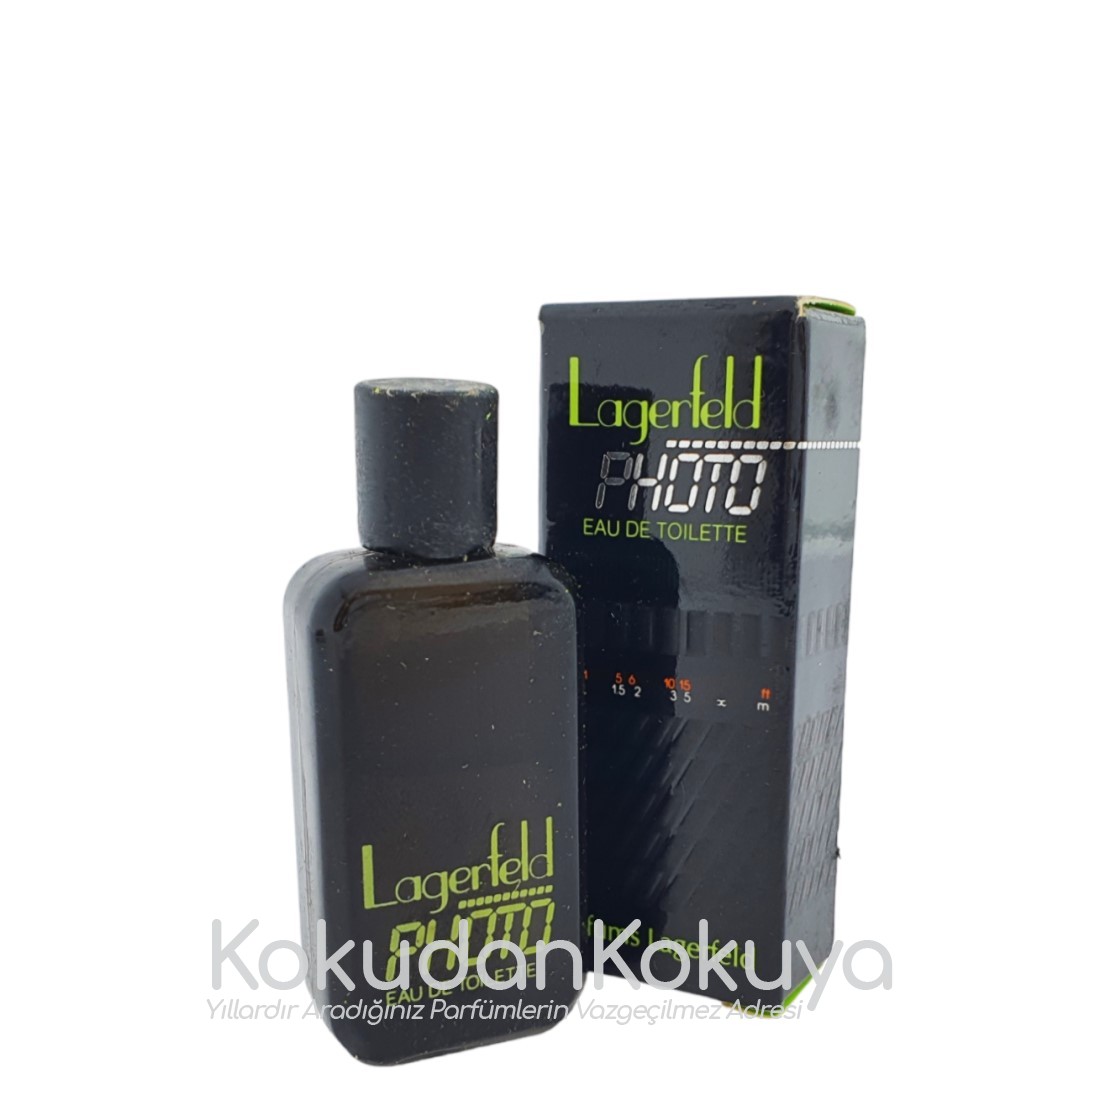 KARL LAGERFELD Photo (Vintage) Parfüm Erkek 5ml Minyatür (Mini Perfume) Dökme 